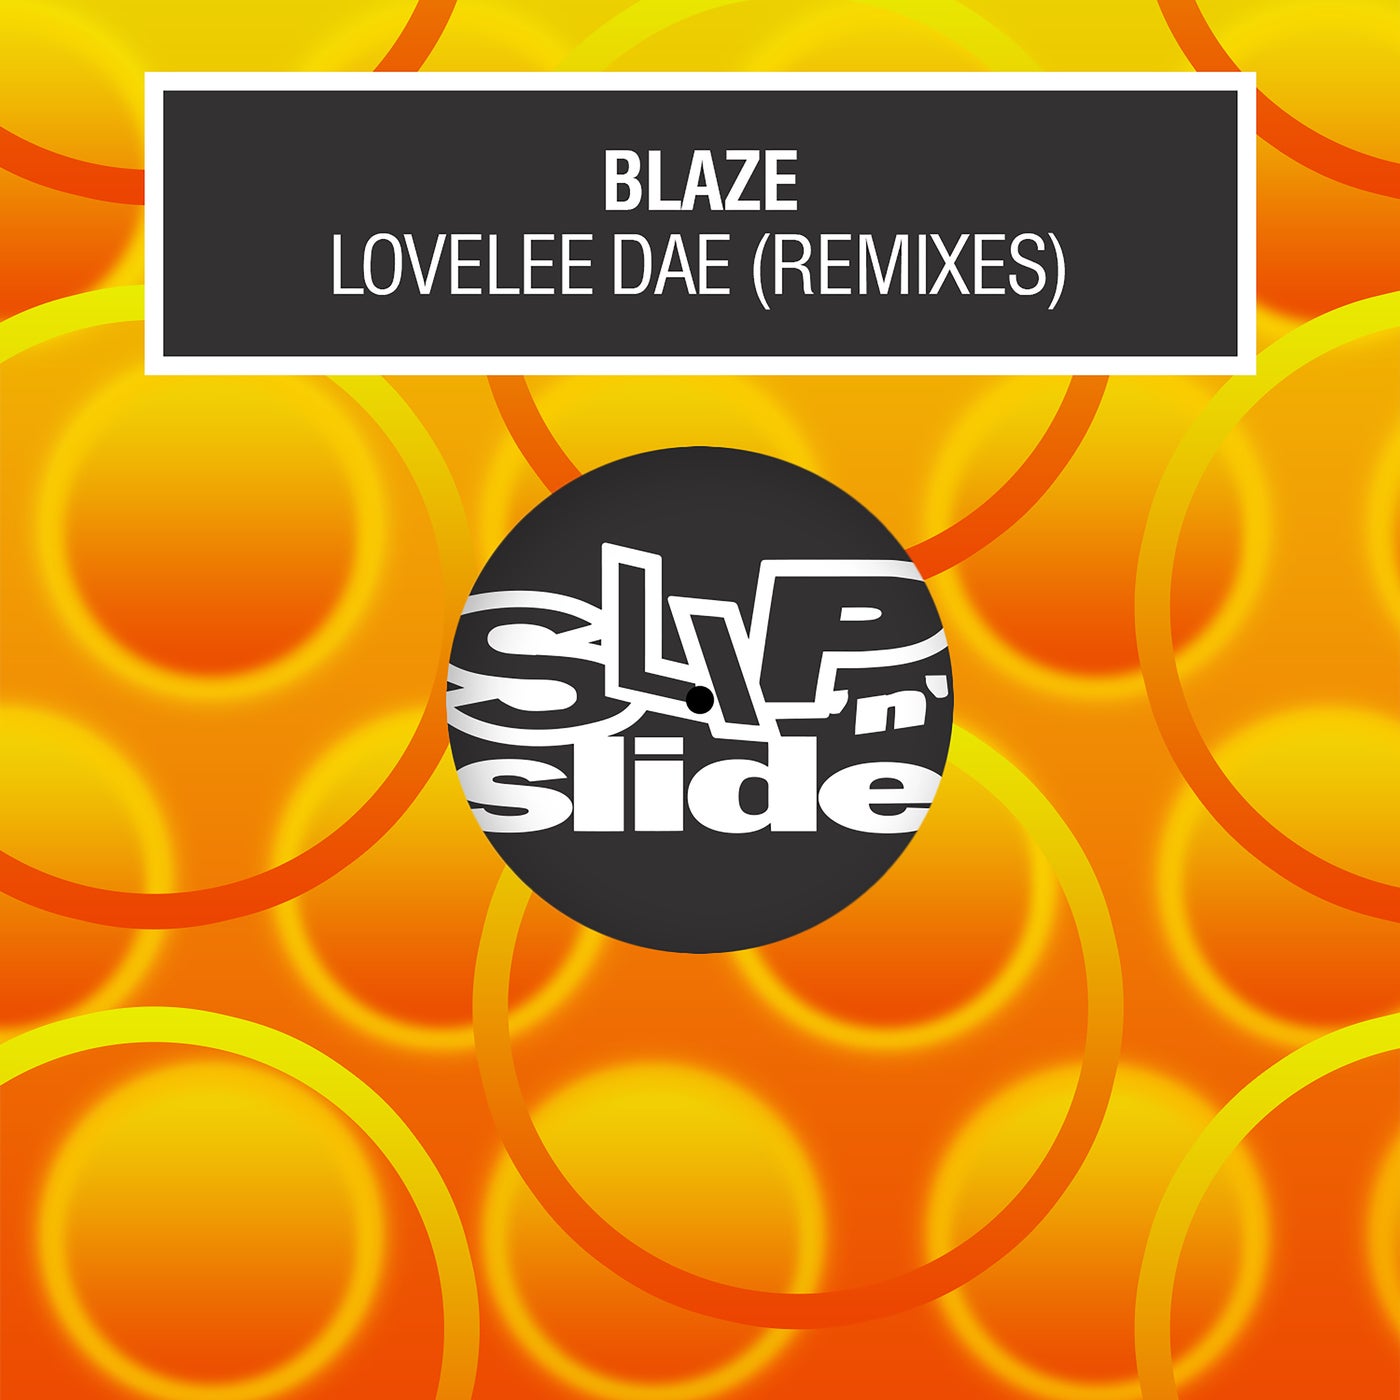 Cover - Blaze - Lovelee Dae (Seth Troxler Extended Remix)